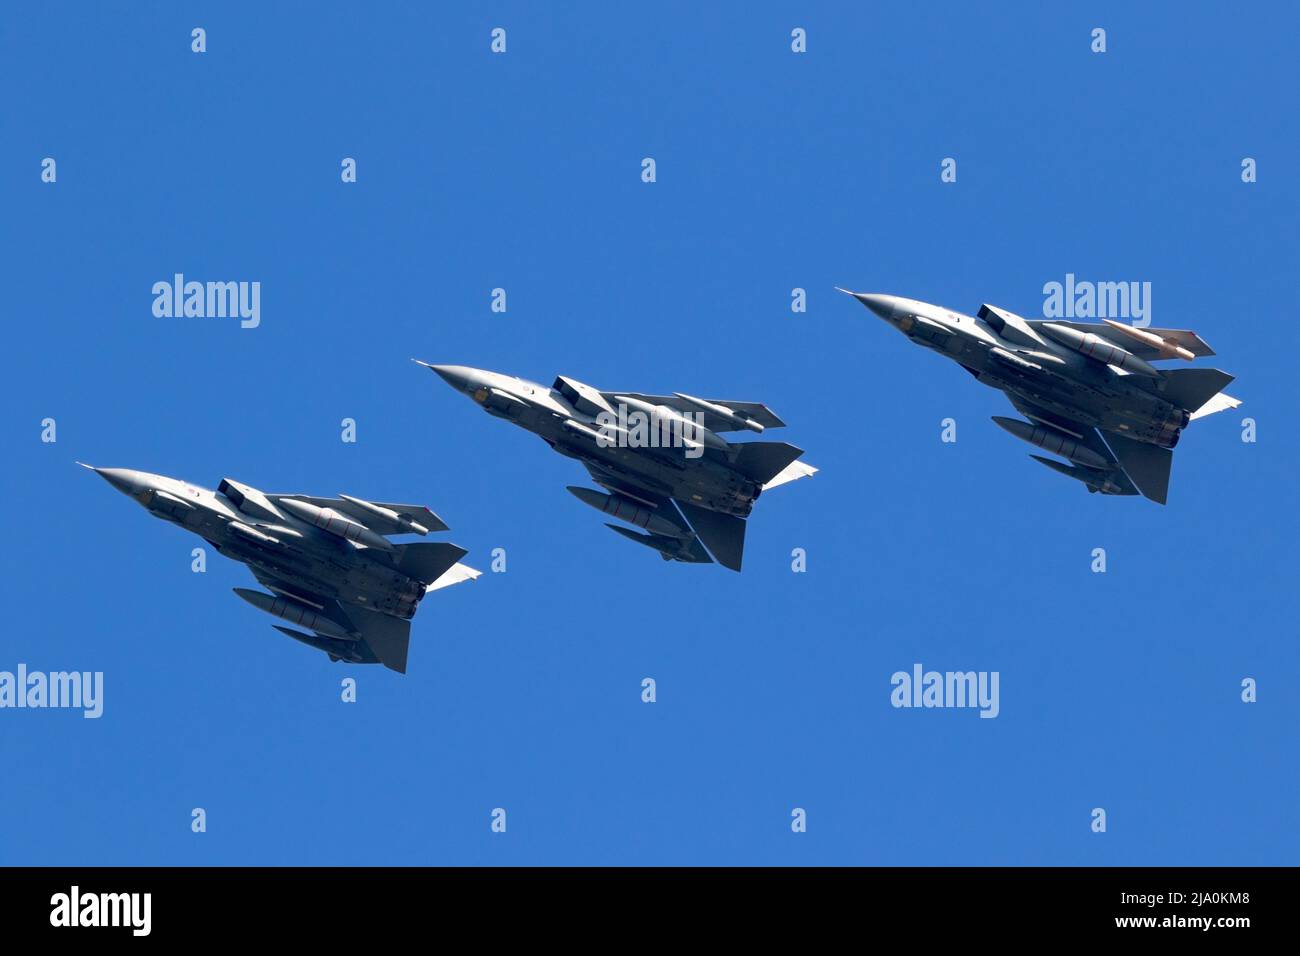 Flug der britischen Royal Air Force Tornado GR4 Bomberjets in Formation während der NATO-Übung Friesische Flagge. Leeuwarden, Niederlande - 28. März 2017 Stockfoto